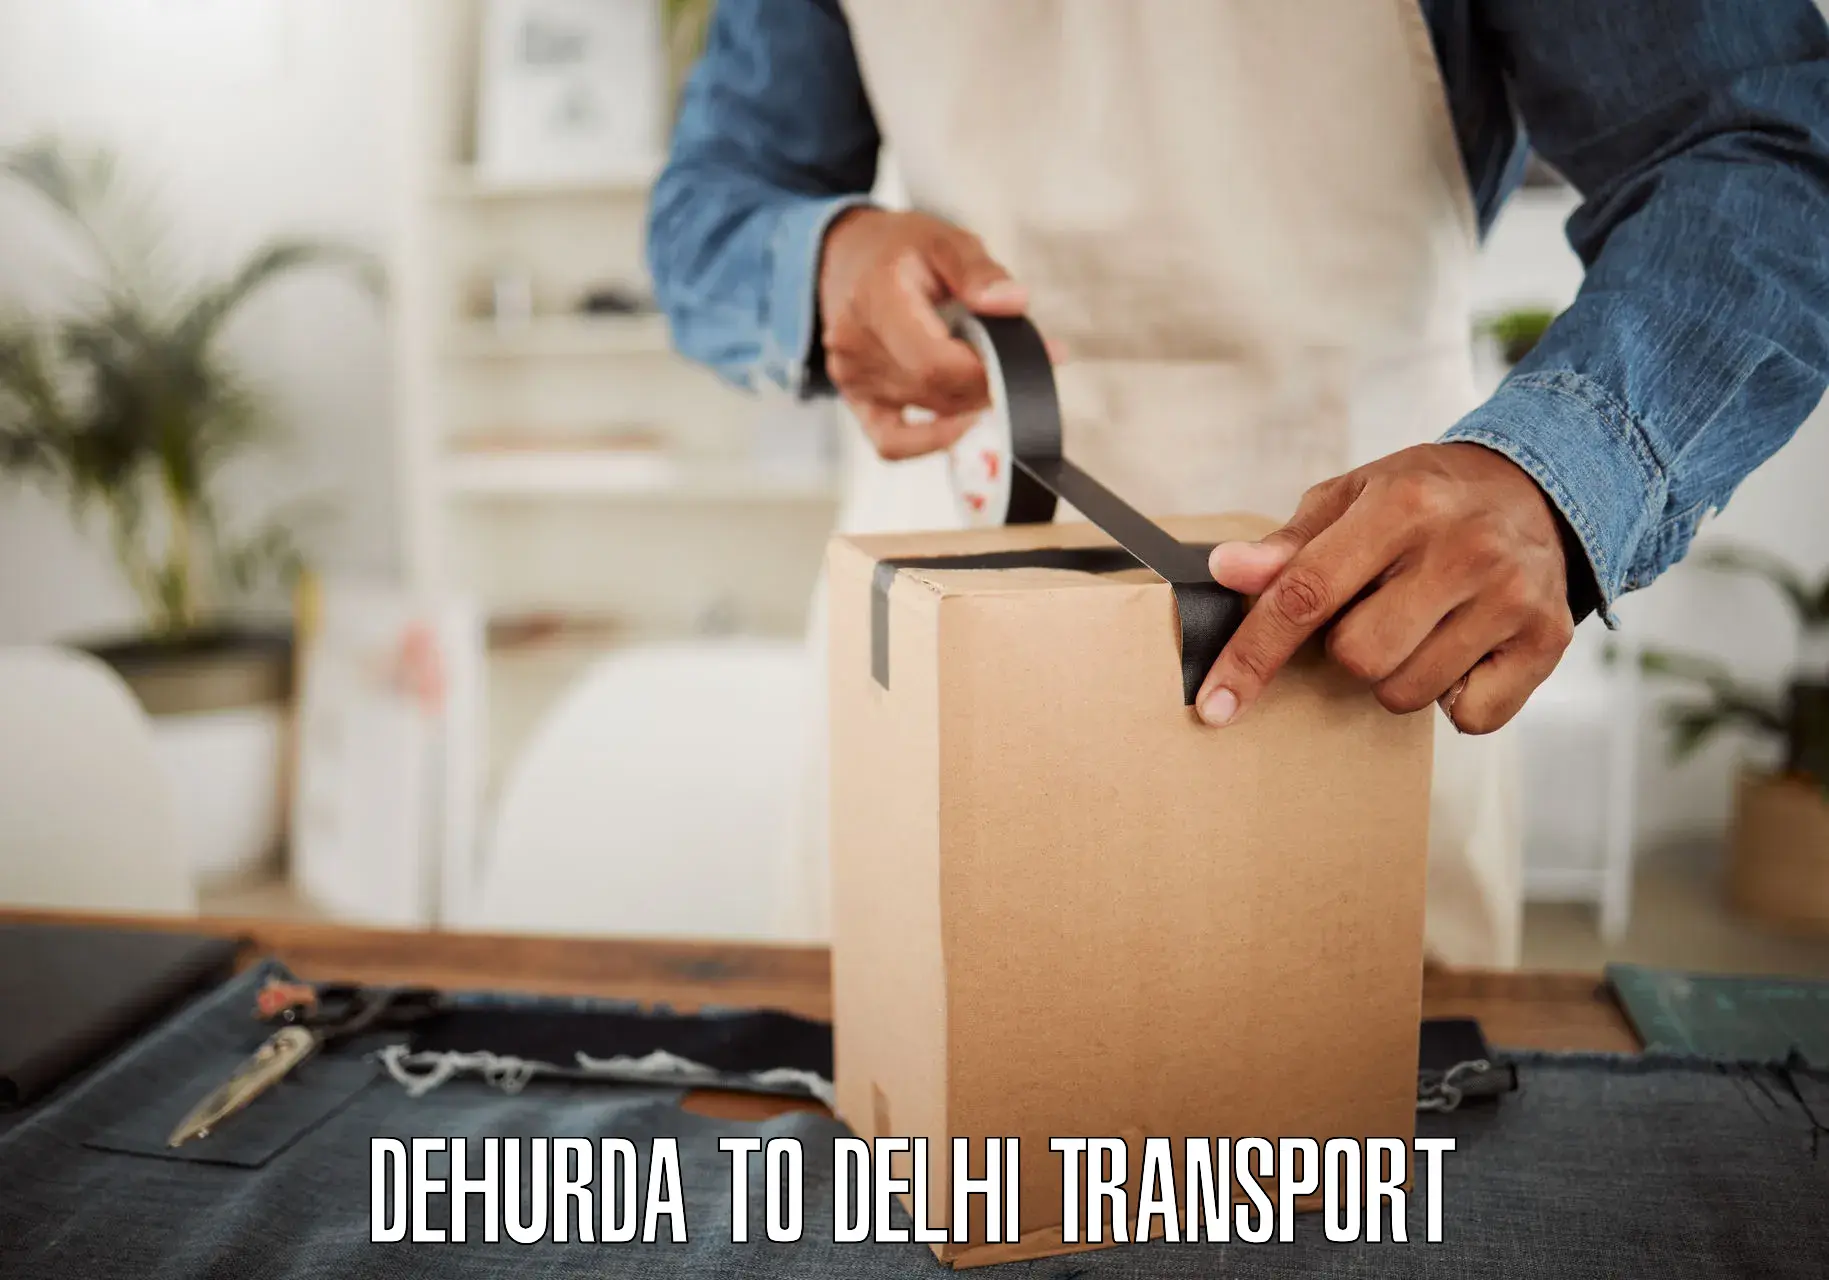 Logistics transportation services Dehurda to East Delhi